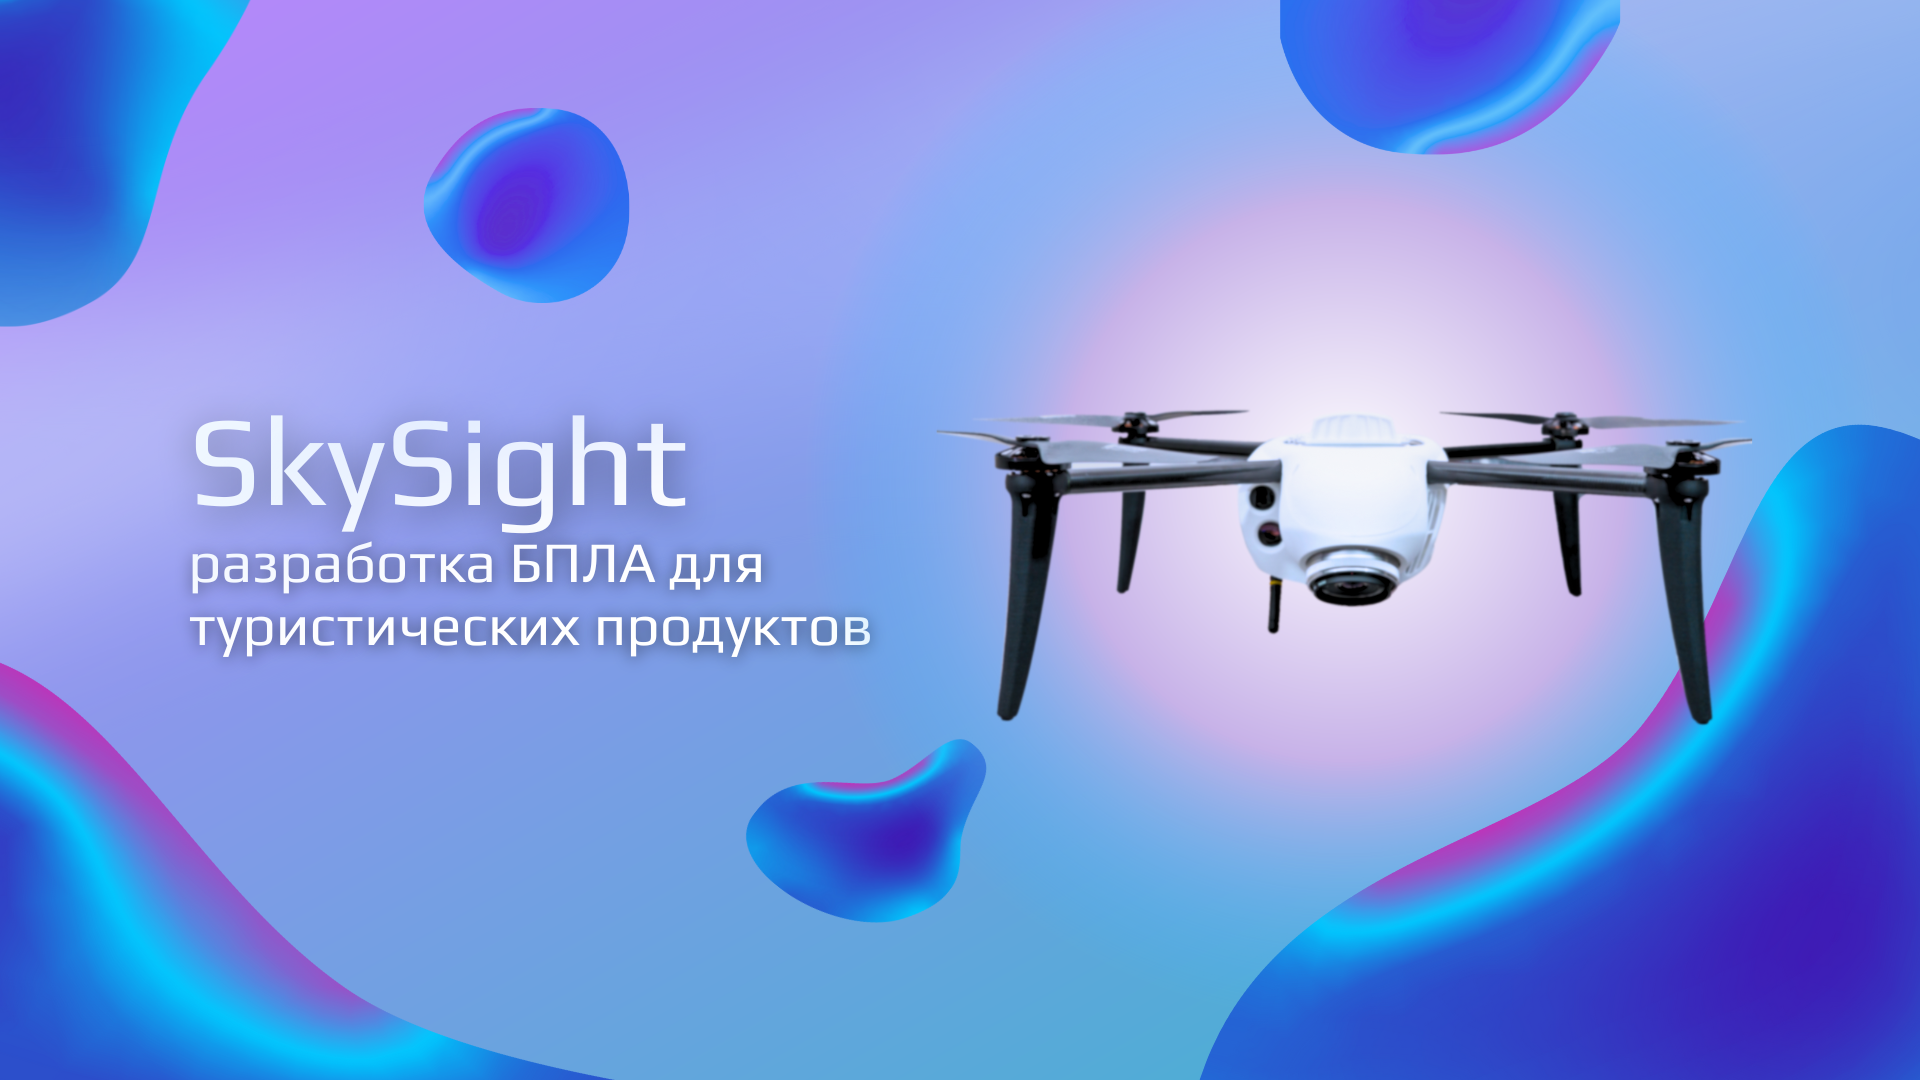 SkySight: разработка БПЛА для туристических продуктов